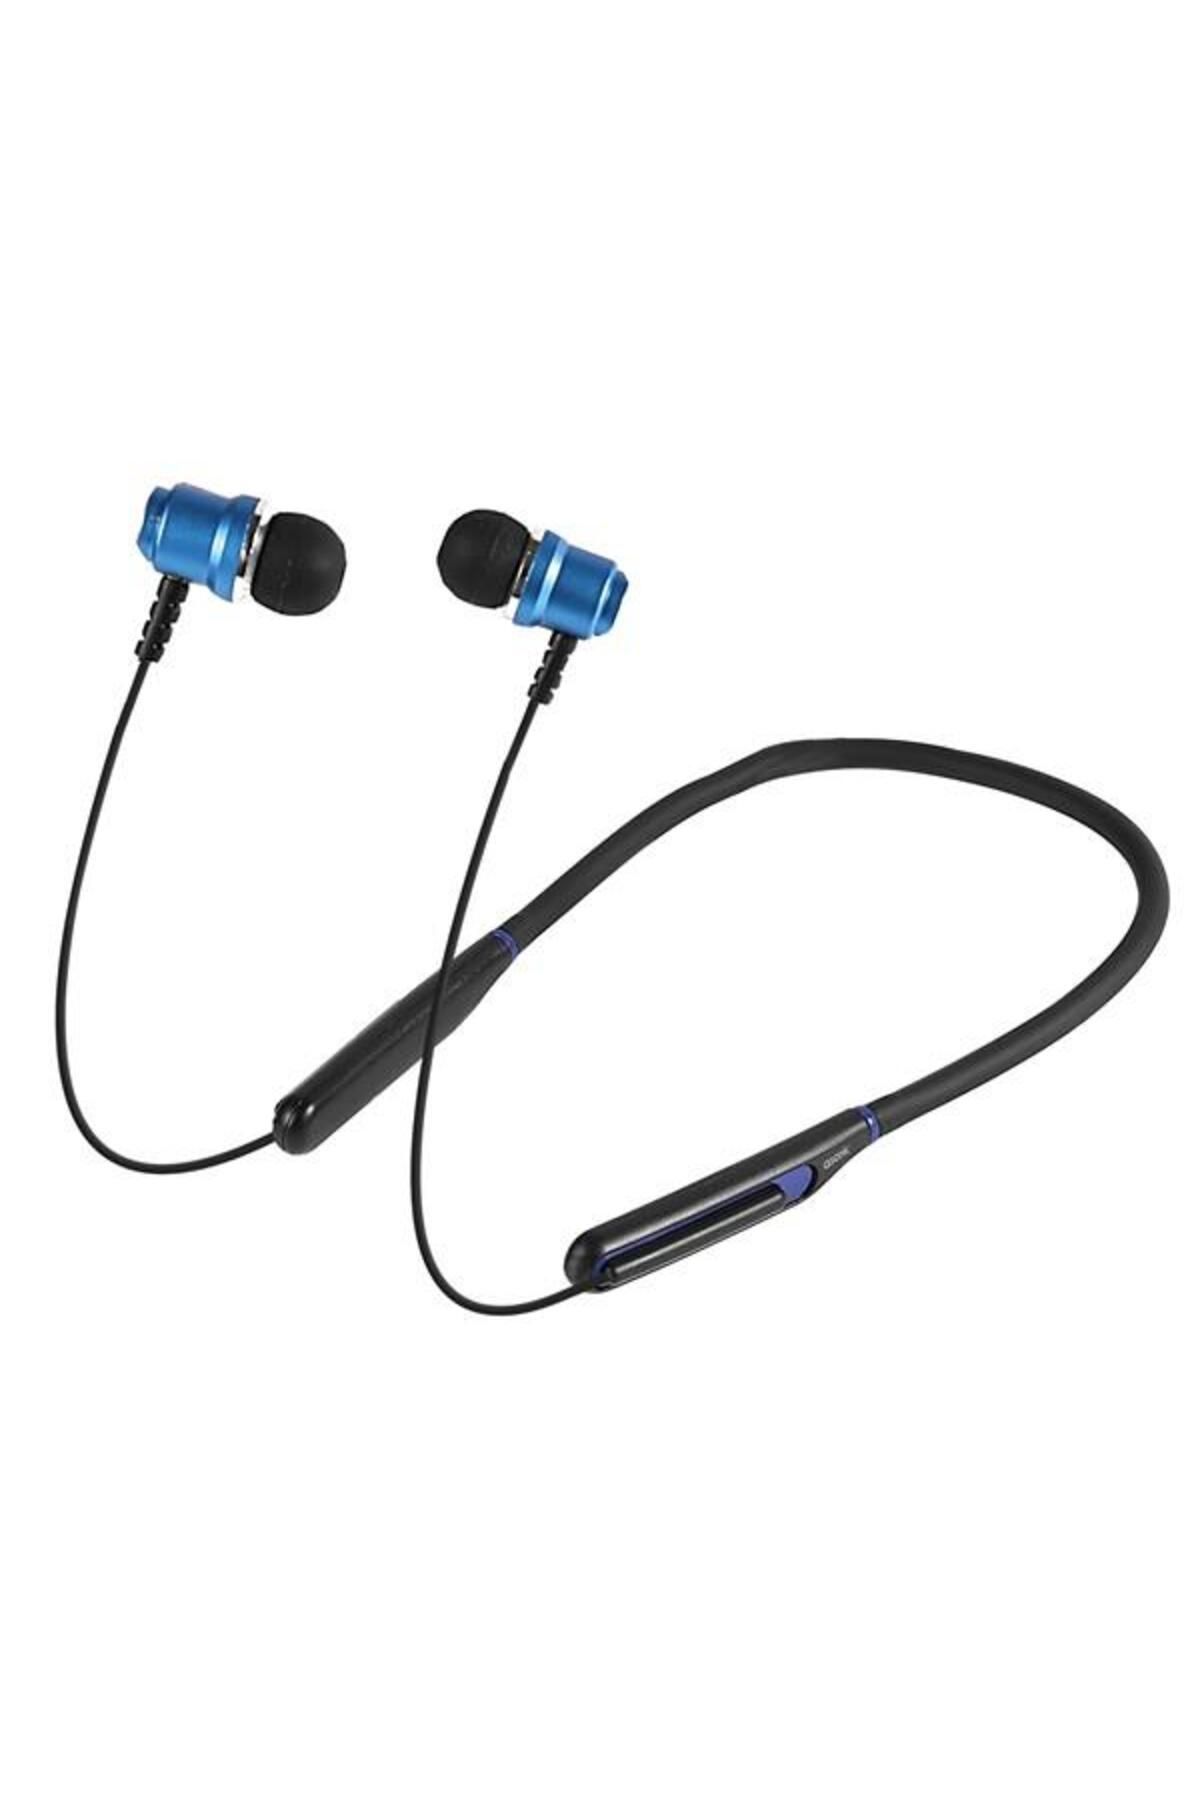 asonic As-xbk65 Siyah/mavi Boyun Askılı Mıknatıslı Bluetooth Tf Kart Spor Kulak Içi Kulaklık